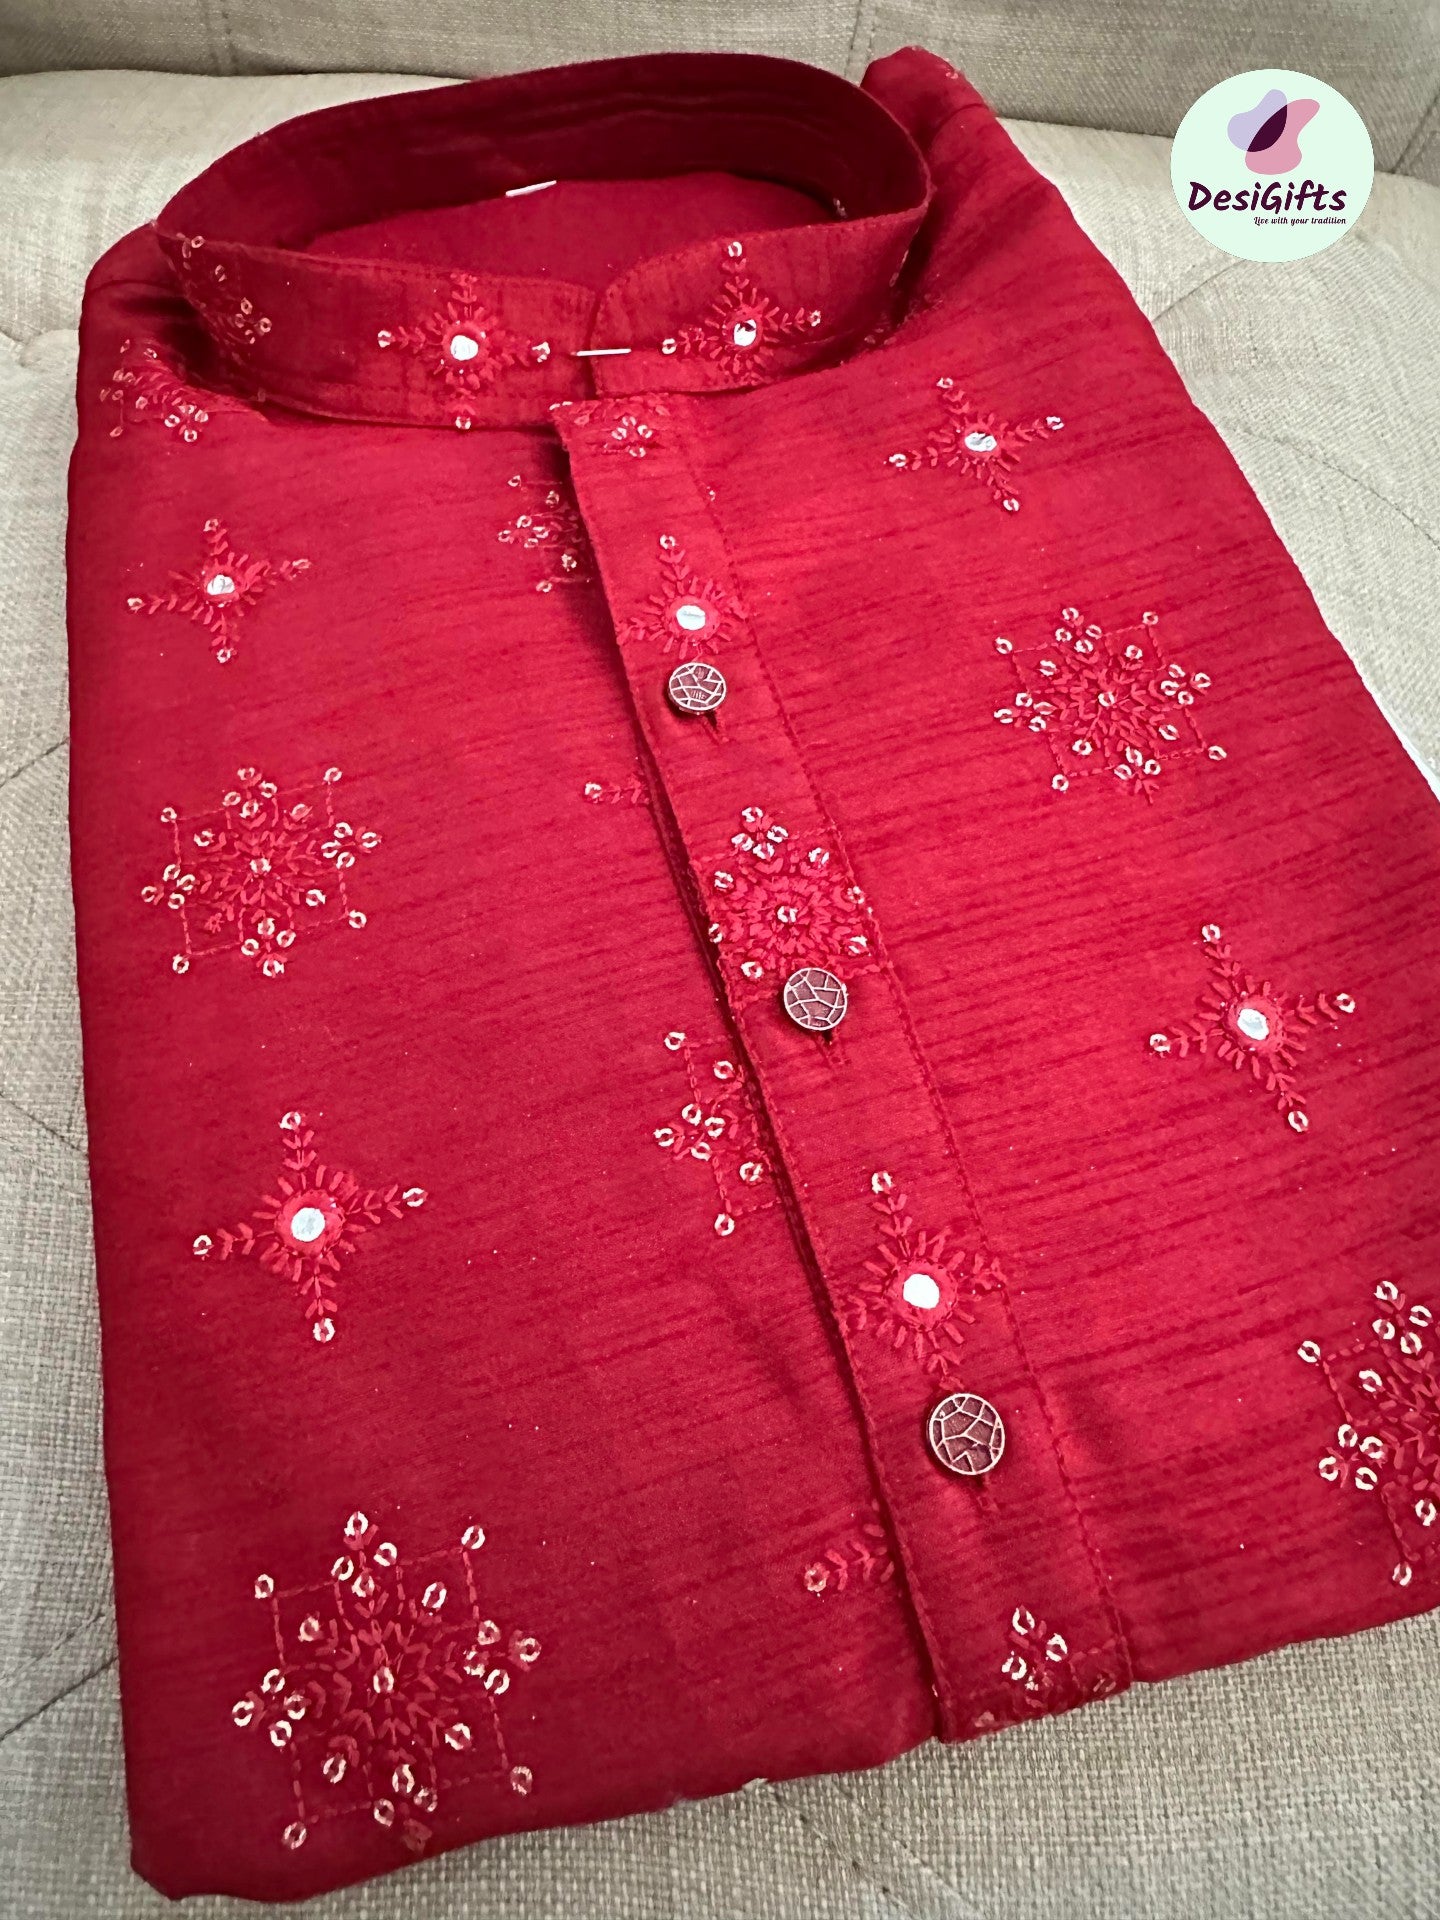 Rose Red Shade Cotton Silk Kurta Pajama Set with Mirror Work KP- 1120